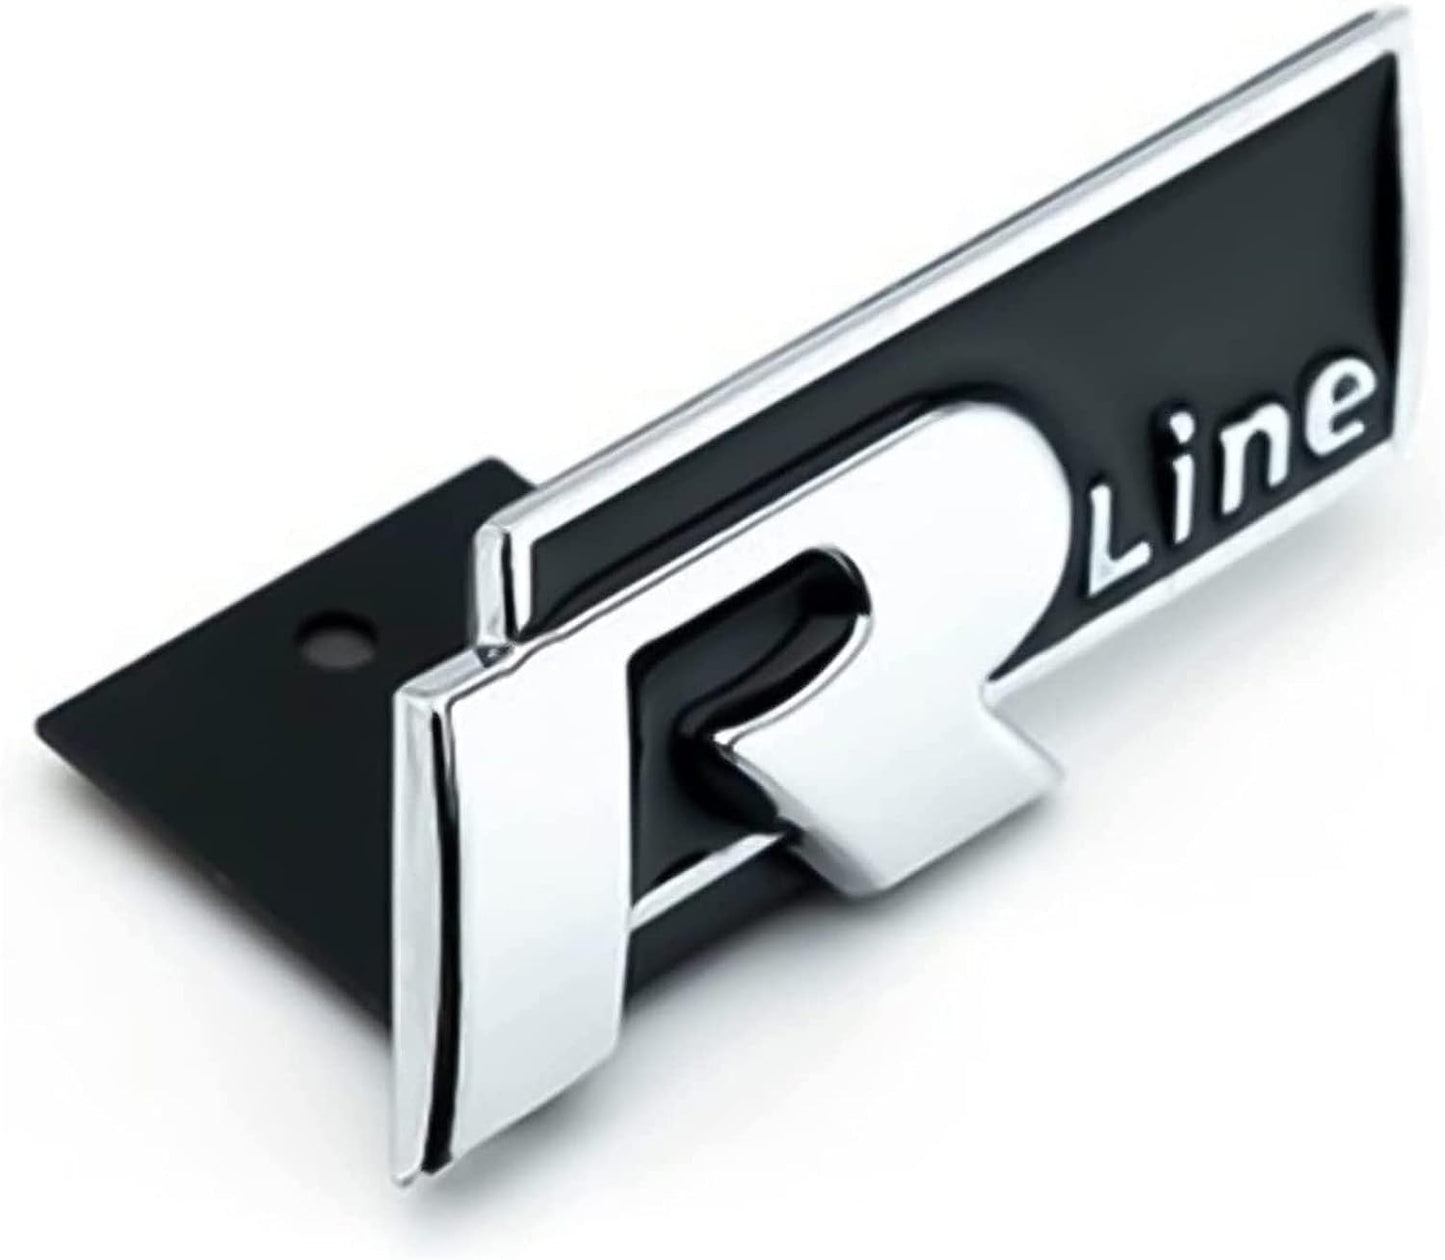 Logo de calandre Volkswagen R-Line (bande adhésive)